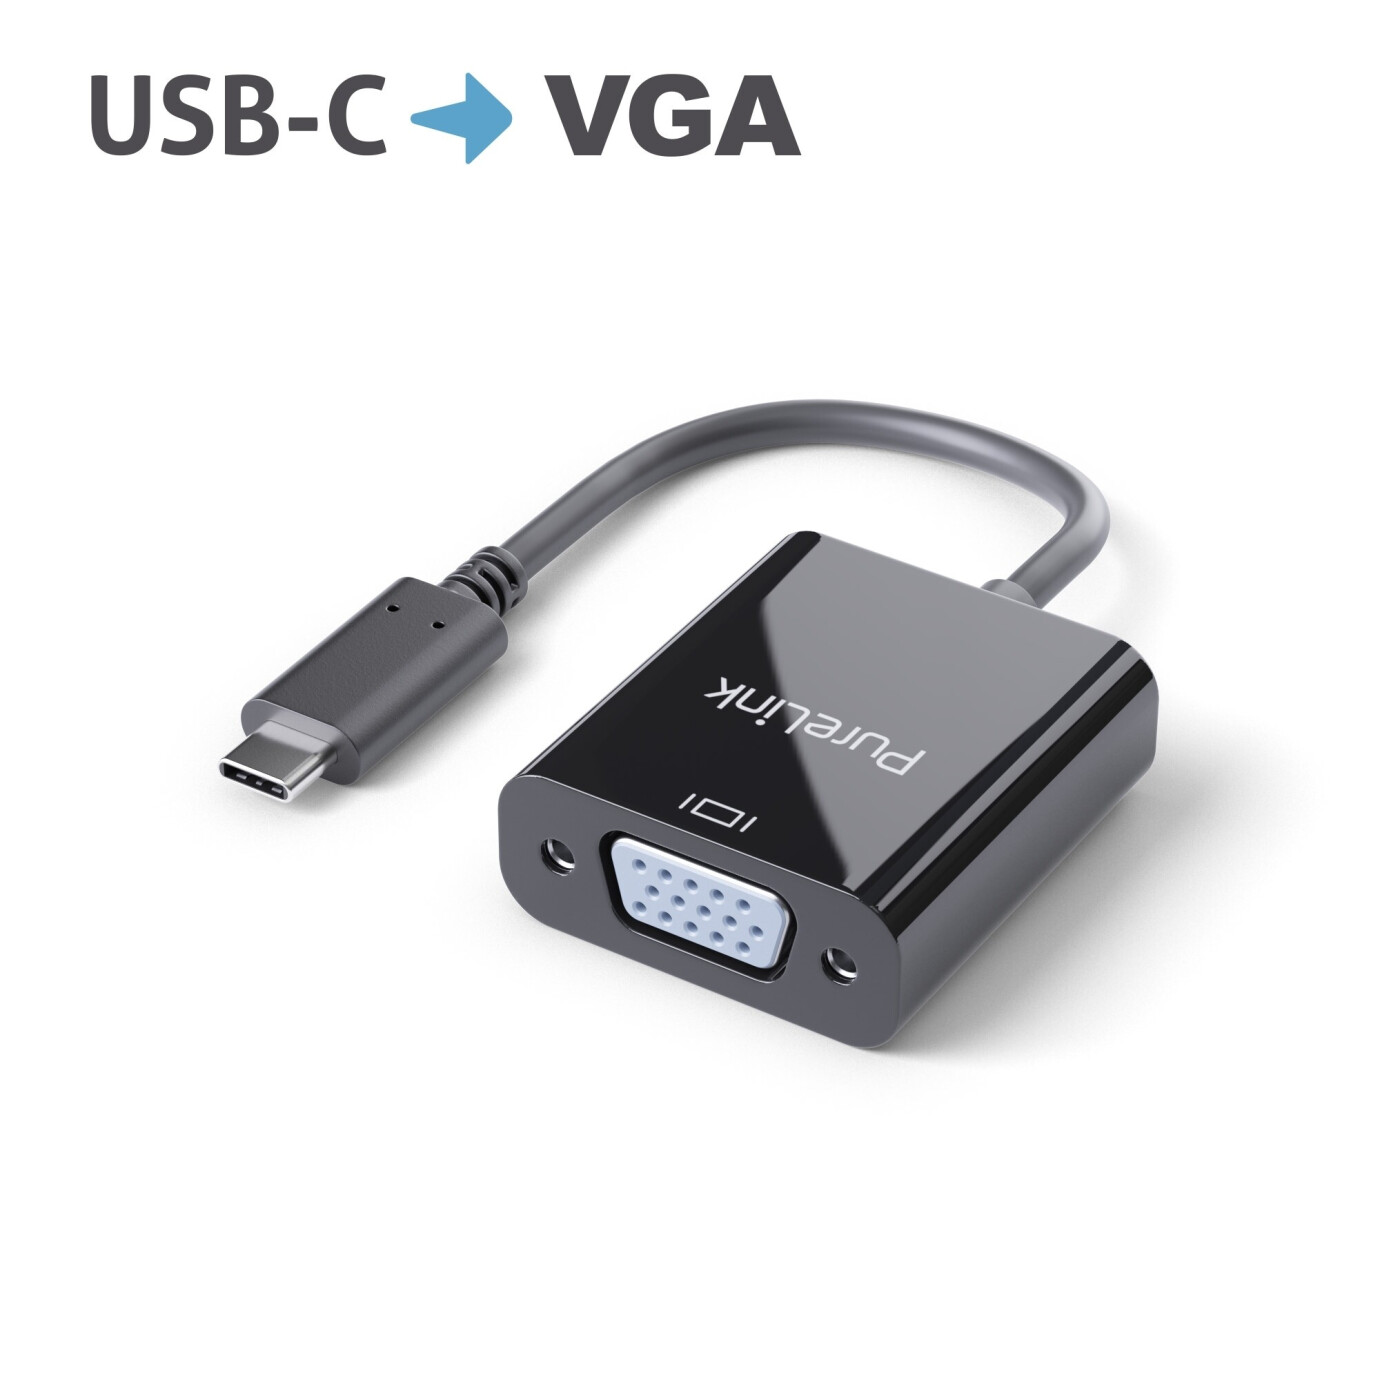 Purelink IS221 USB-C auf VGA Adapter 0,10m schwarz